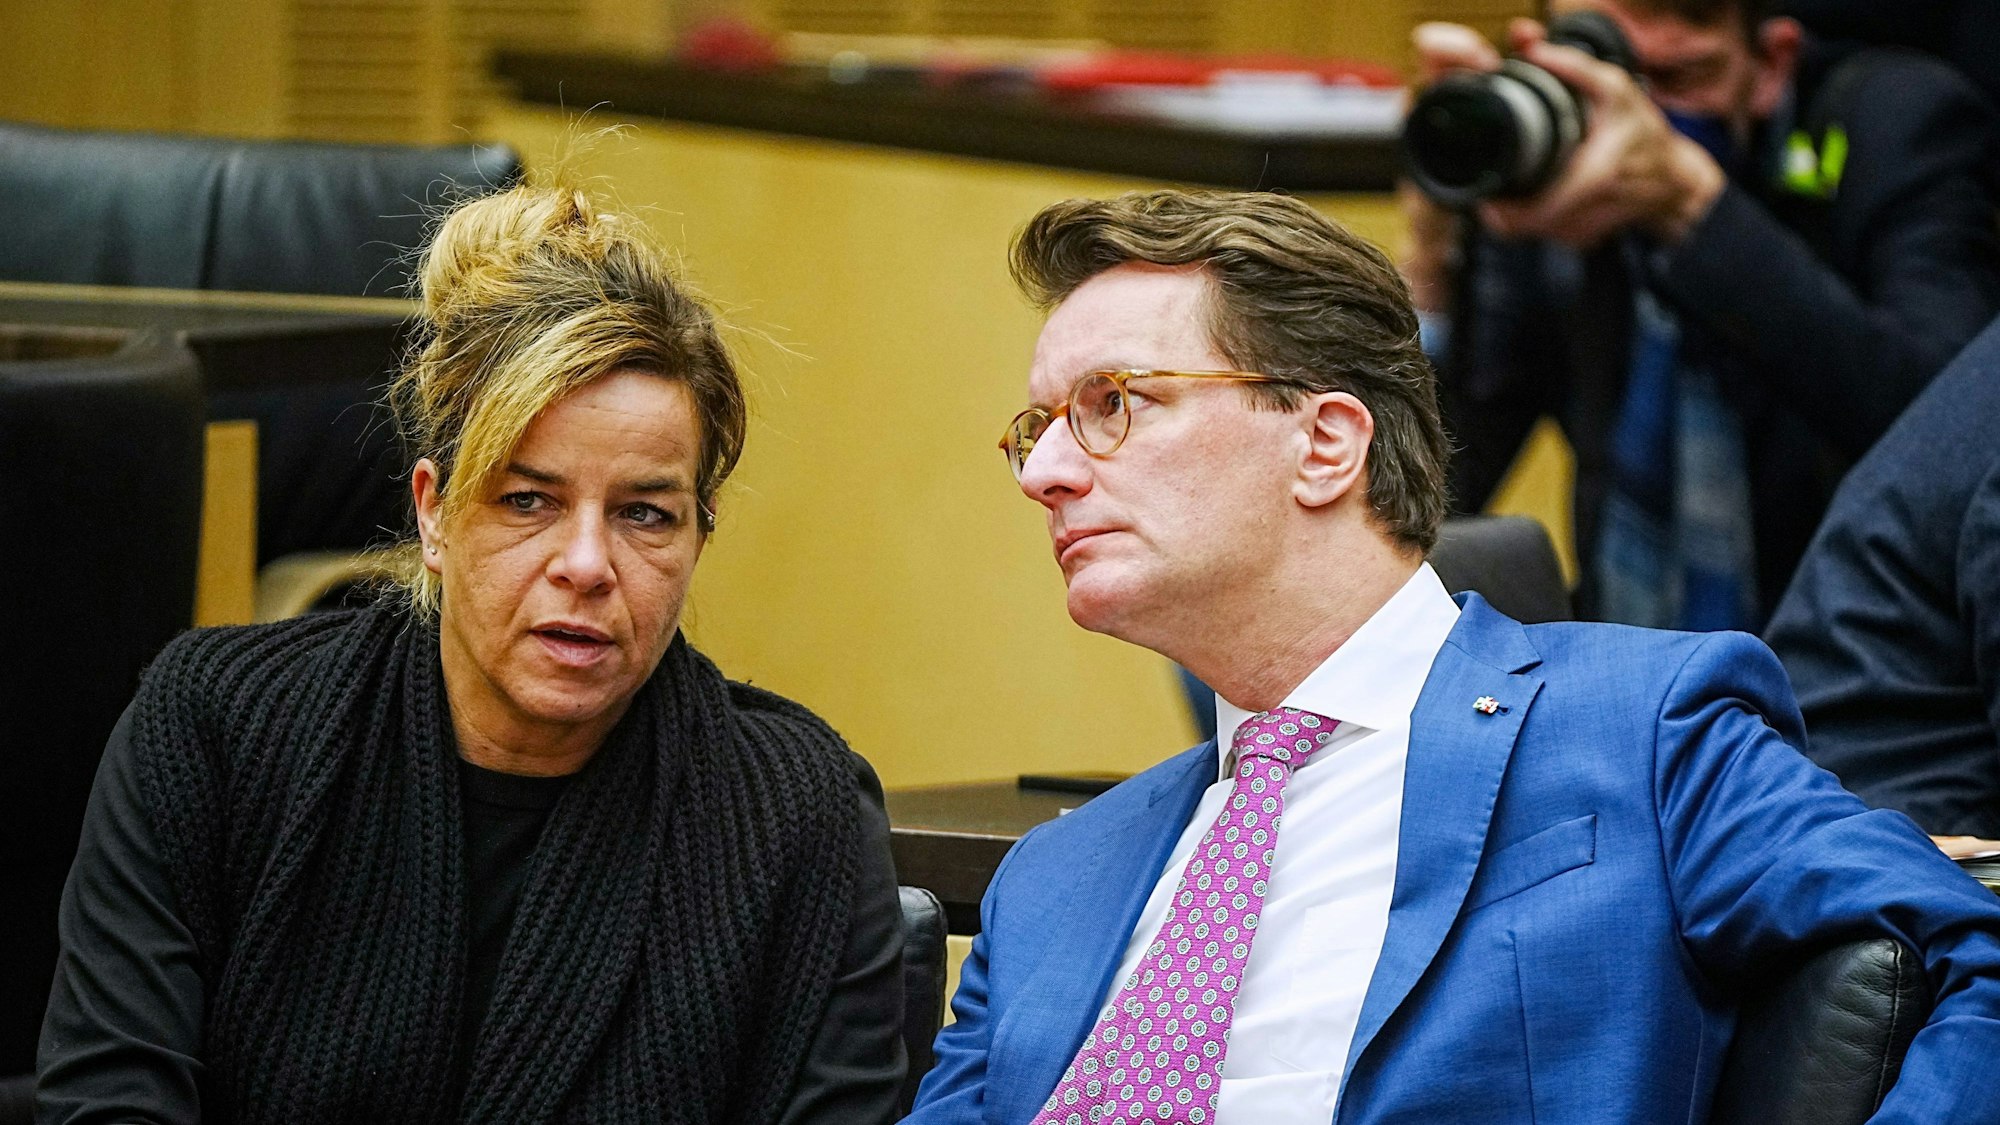 NRW-Wirtschaftsministerin Mona Neubaur (l, Bündnis 90/Die Grünen) und Ministerpräsident Hendrik Wüst (CDU) sitzen nebeneinander.